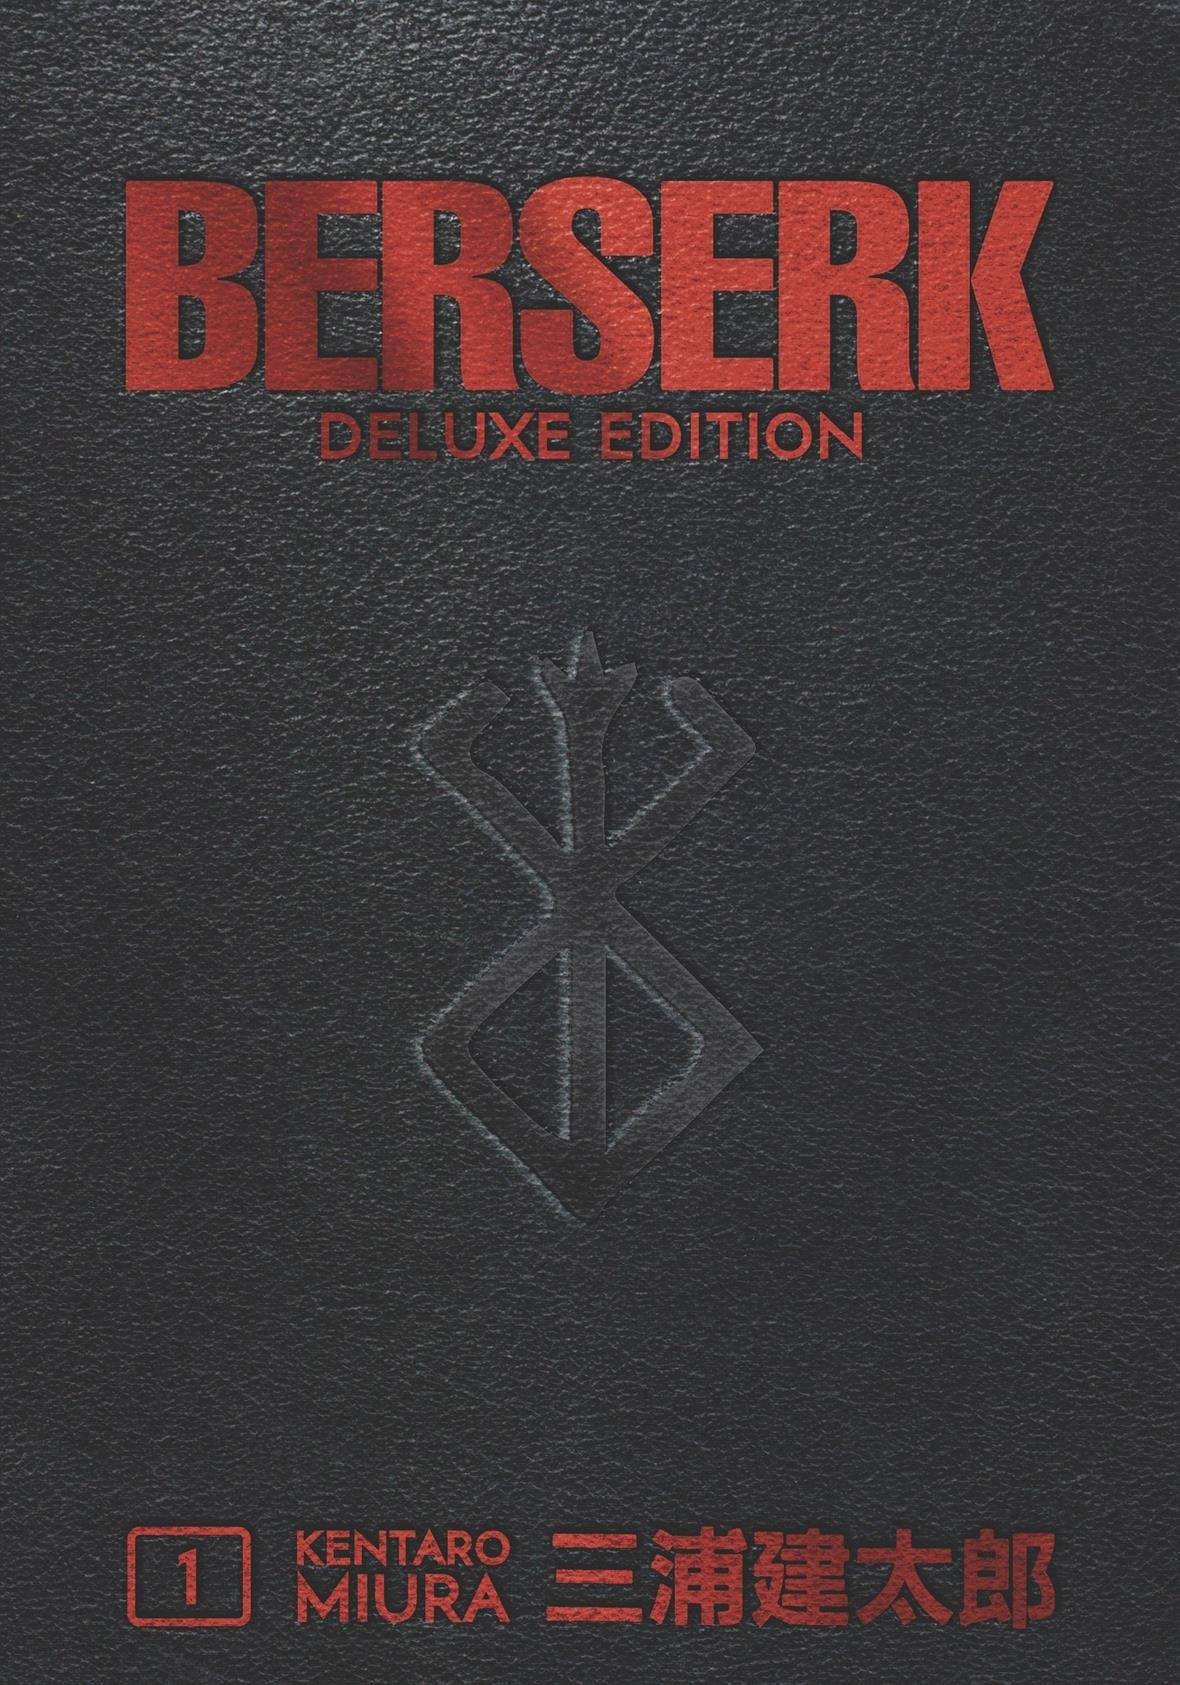 BERSERK DELUXE EDITION VOL 01